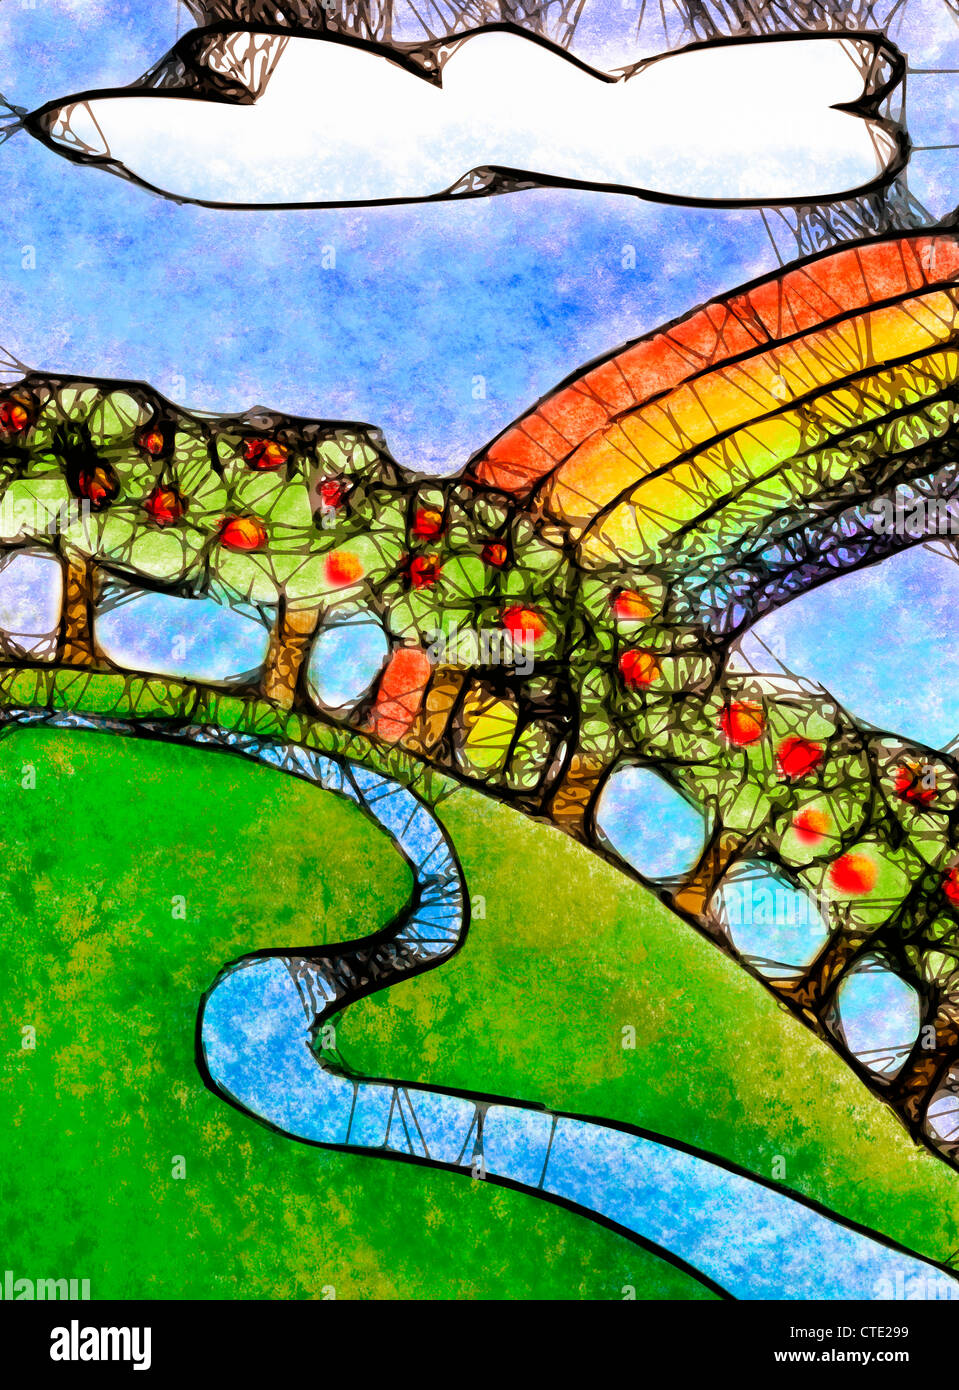 Illustration de pommiers sur un stylisé colline herbeuse avec arc-en-ciel colorés Banque D'Images